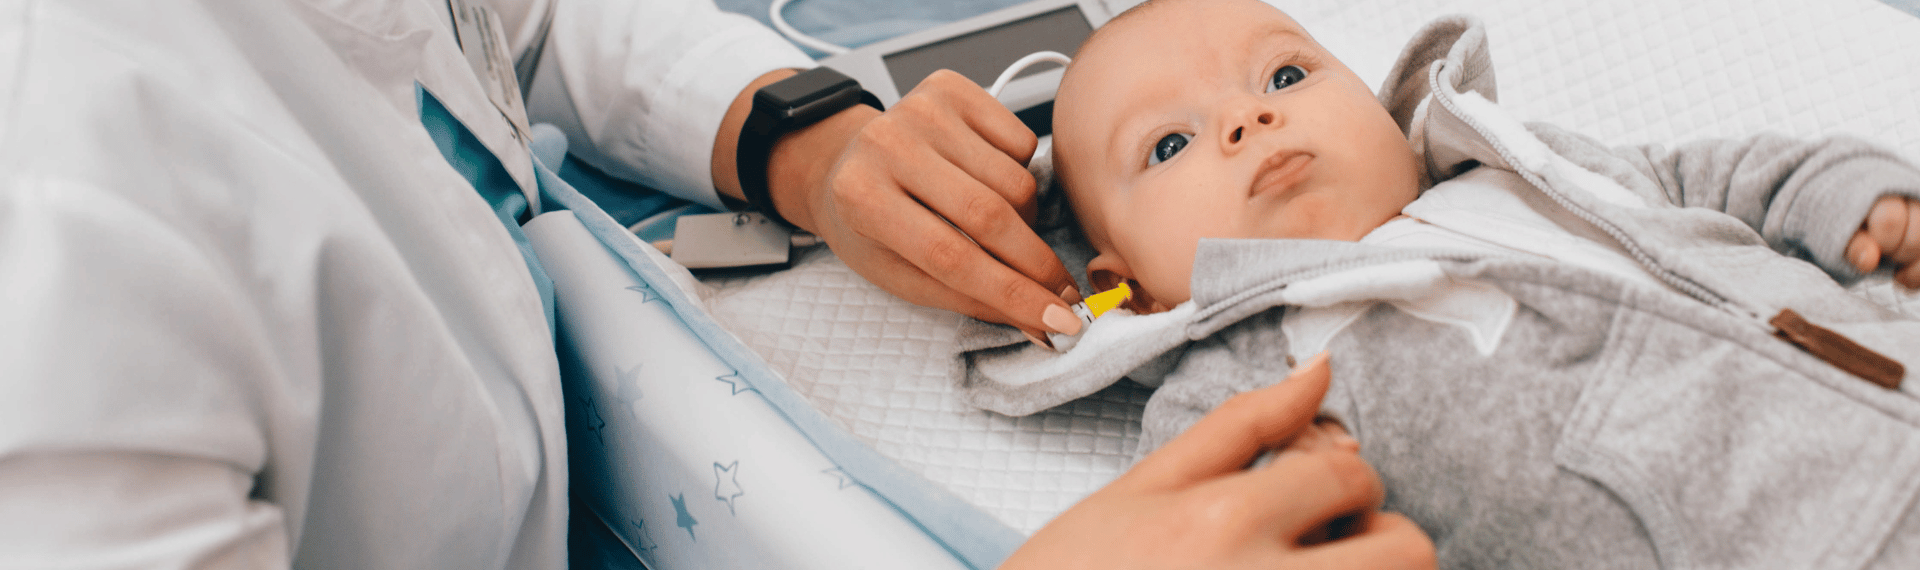 newborn-hearing